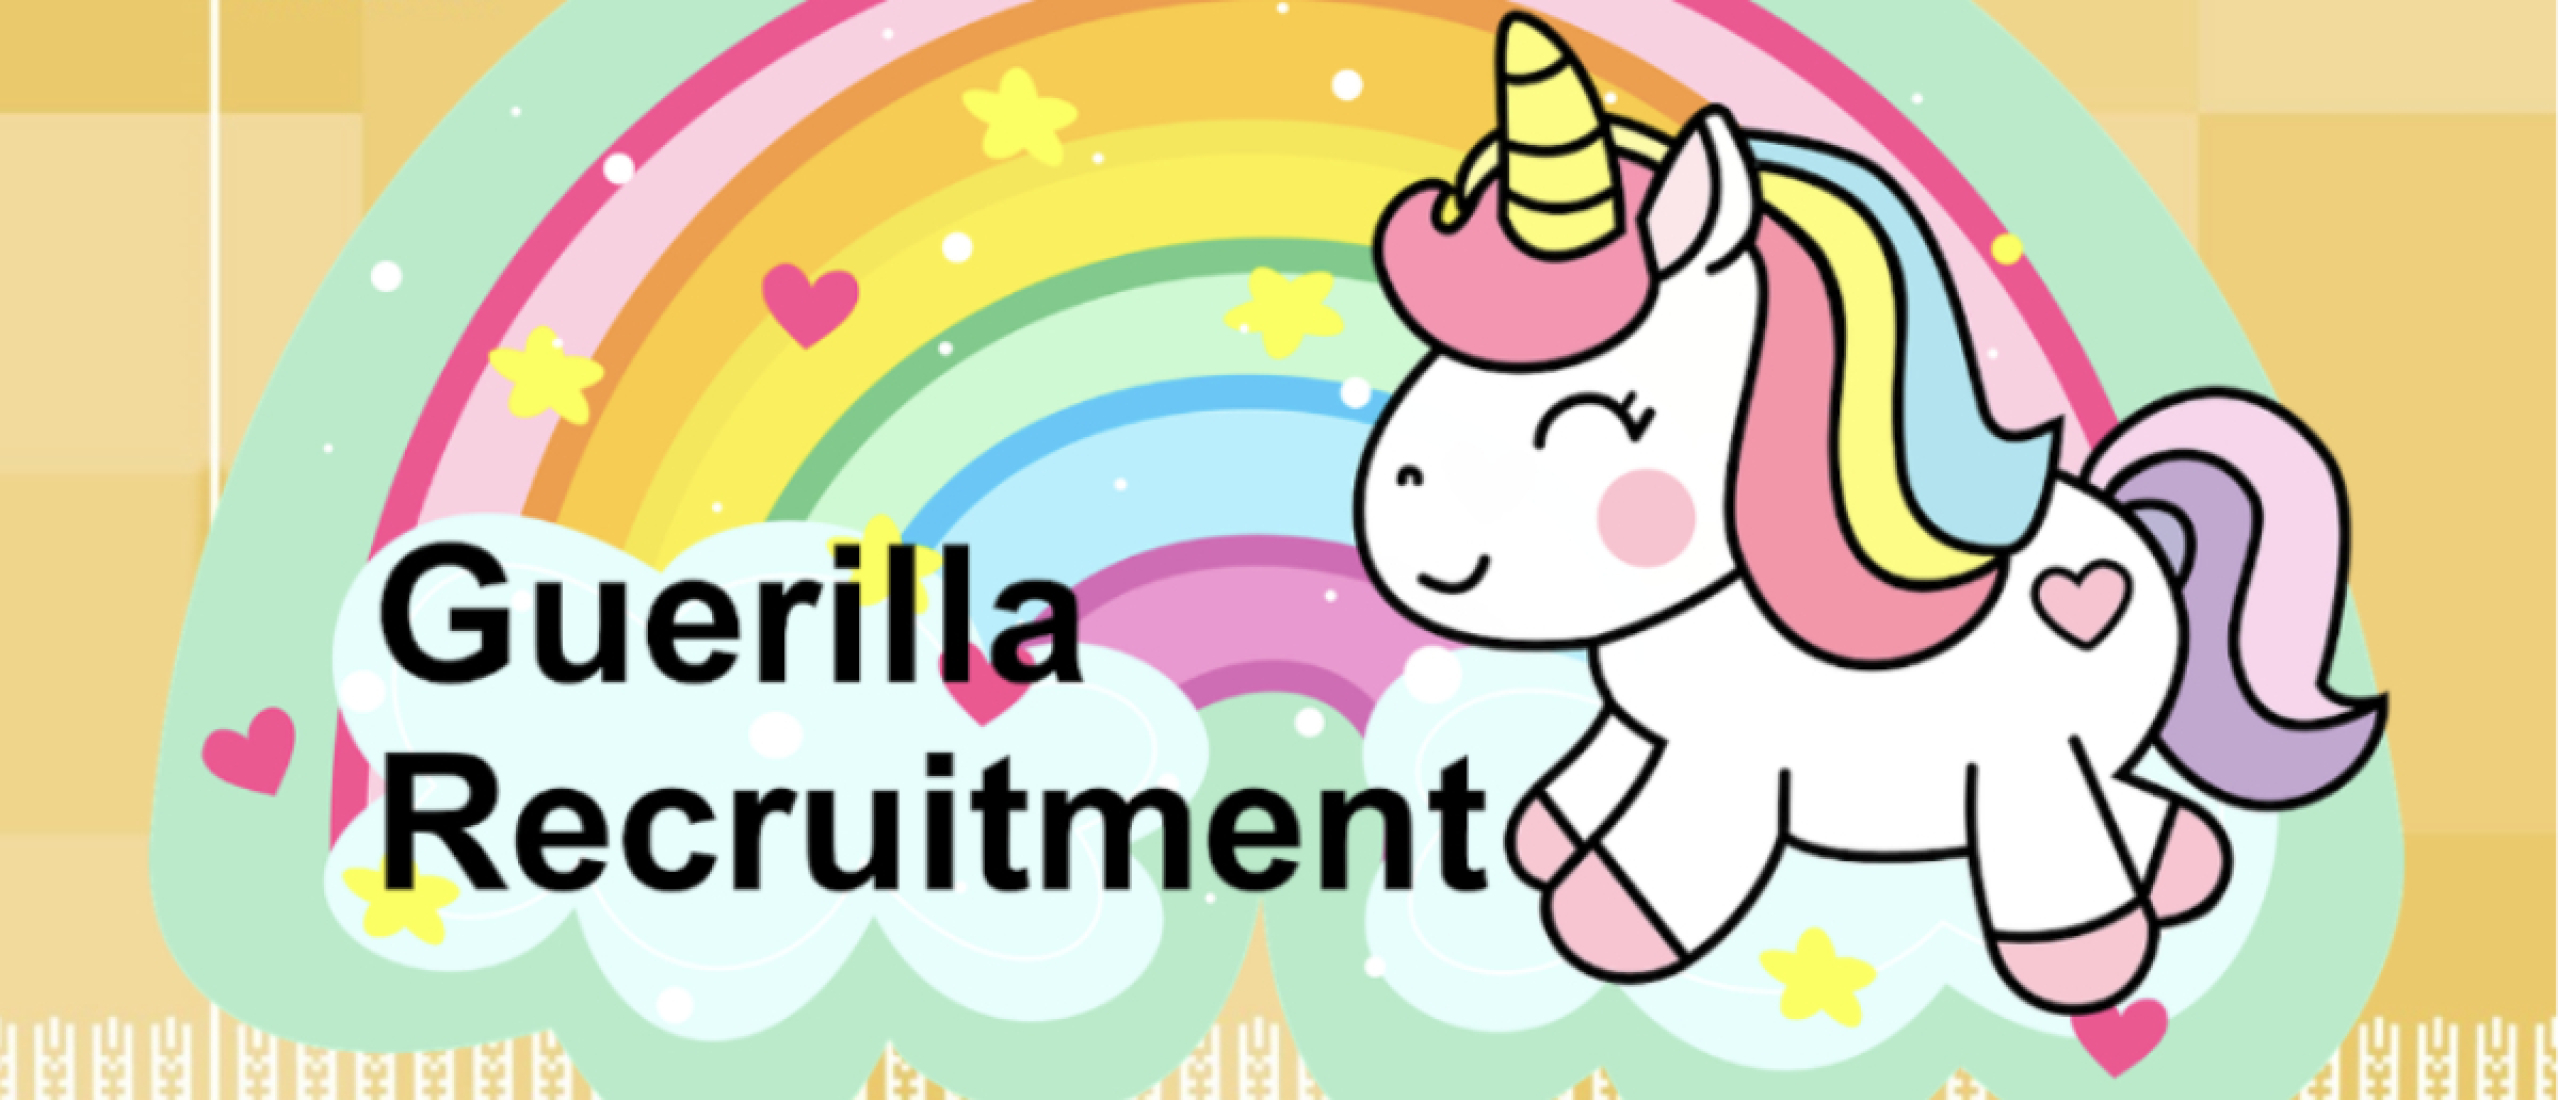 Guerilla recruitment en de meest hilarische namen en pay-offs ooit bedacht!